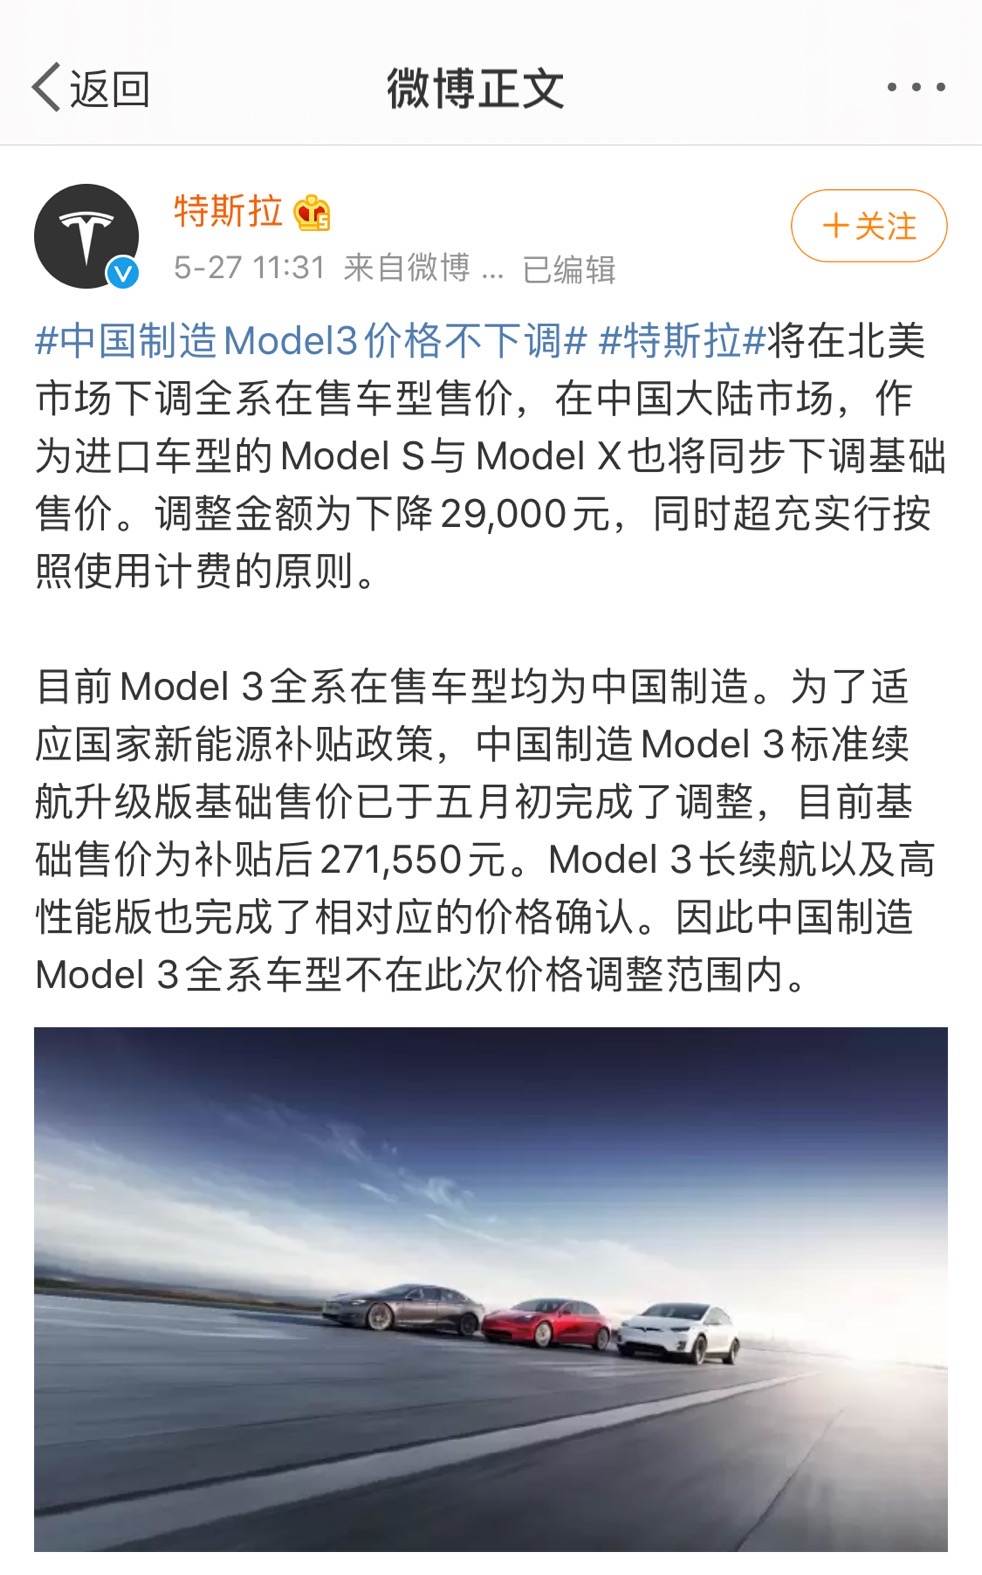 特斯拉进口车型Model S/Model X调整金额下降29000元